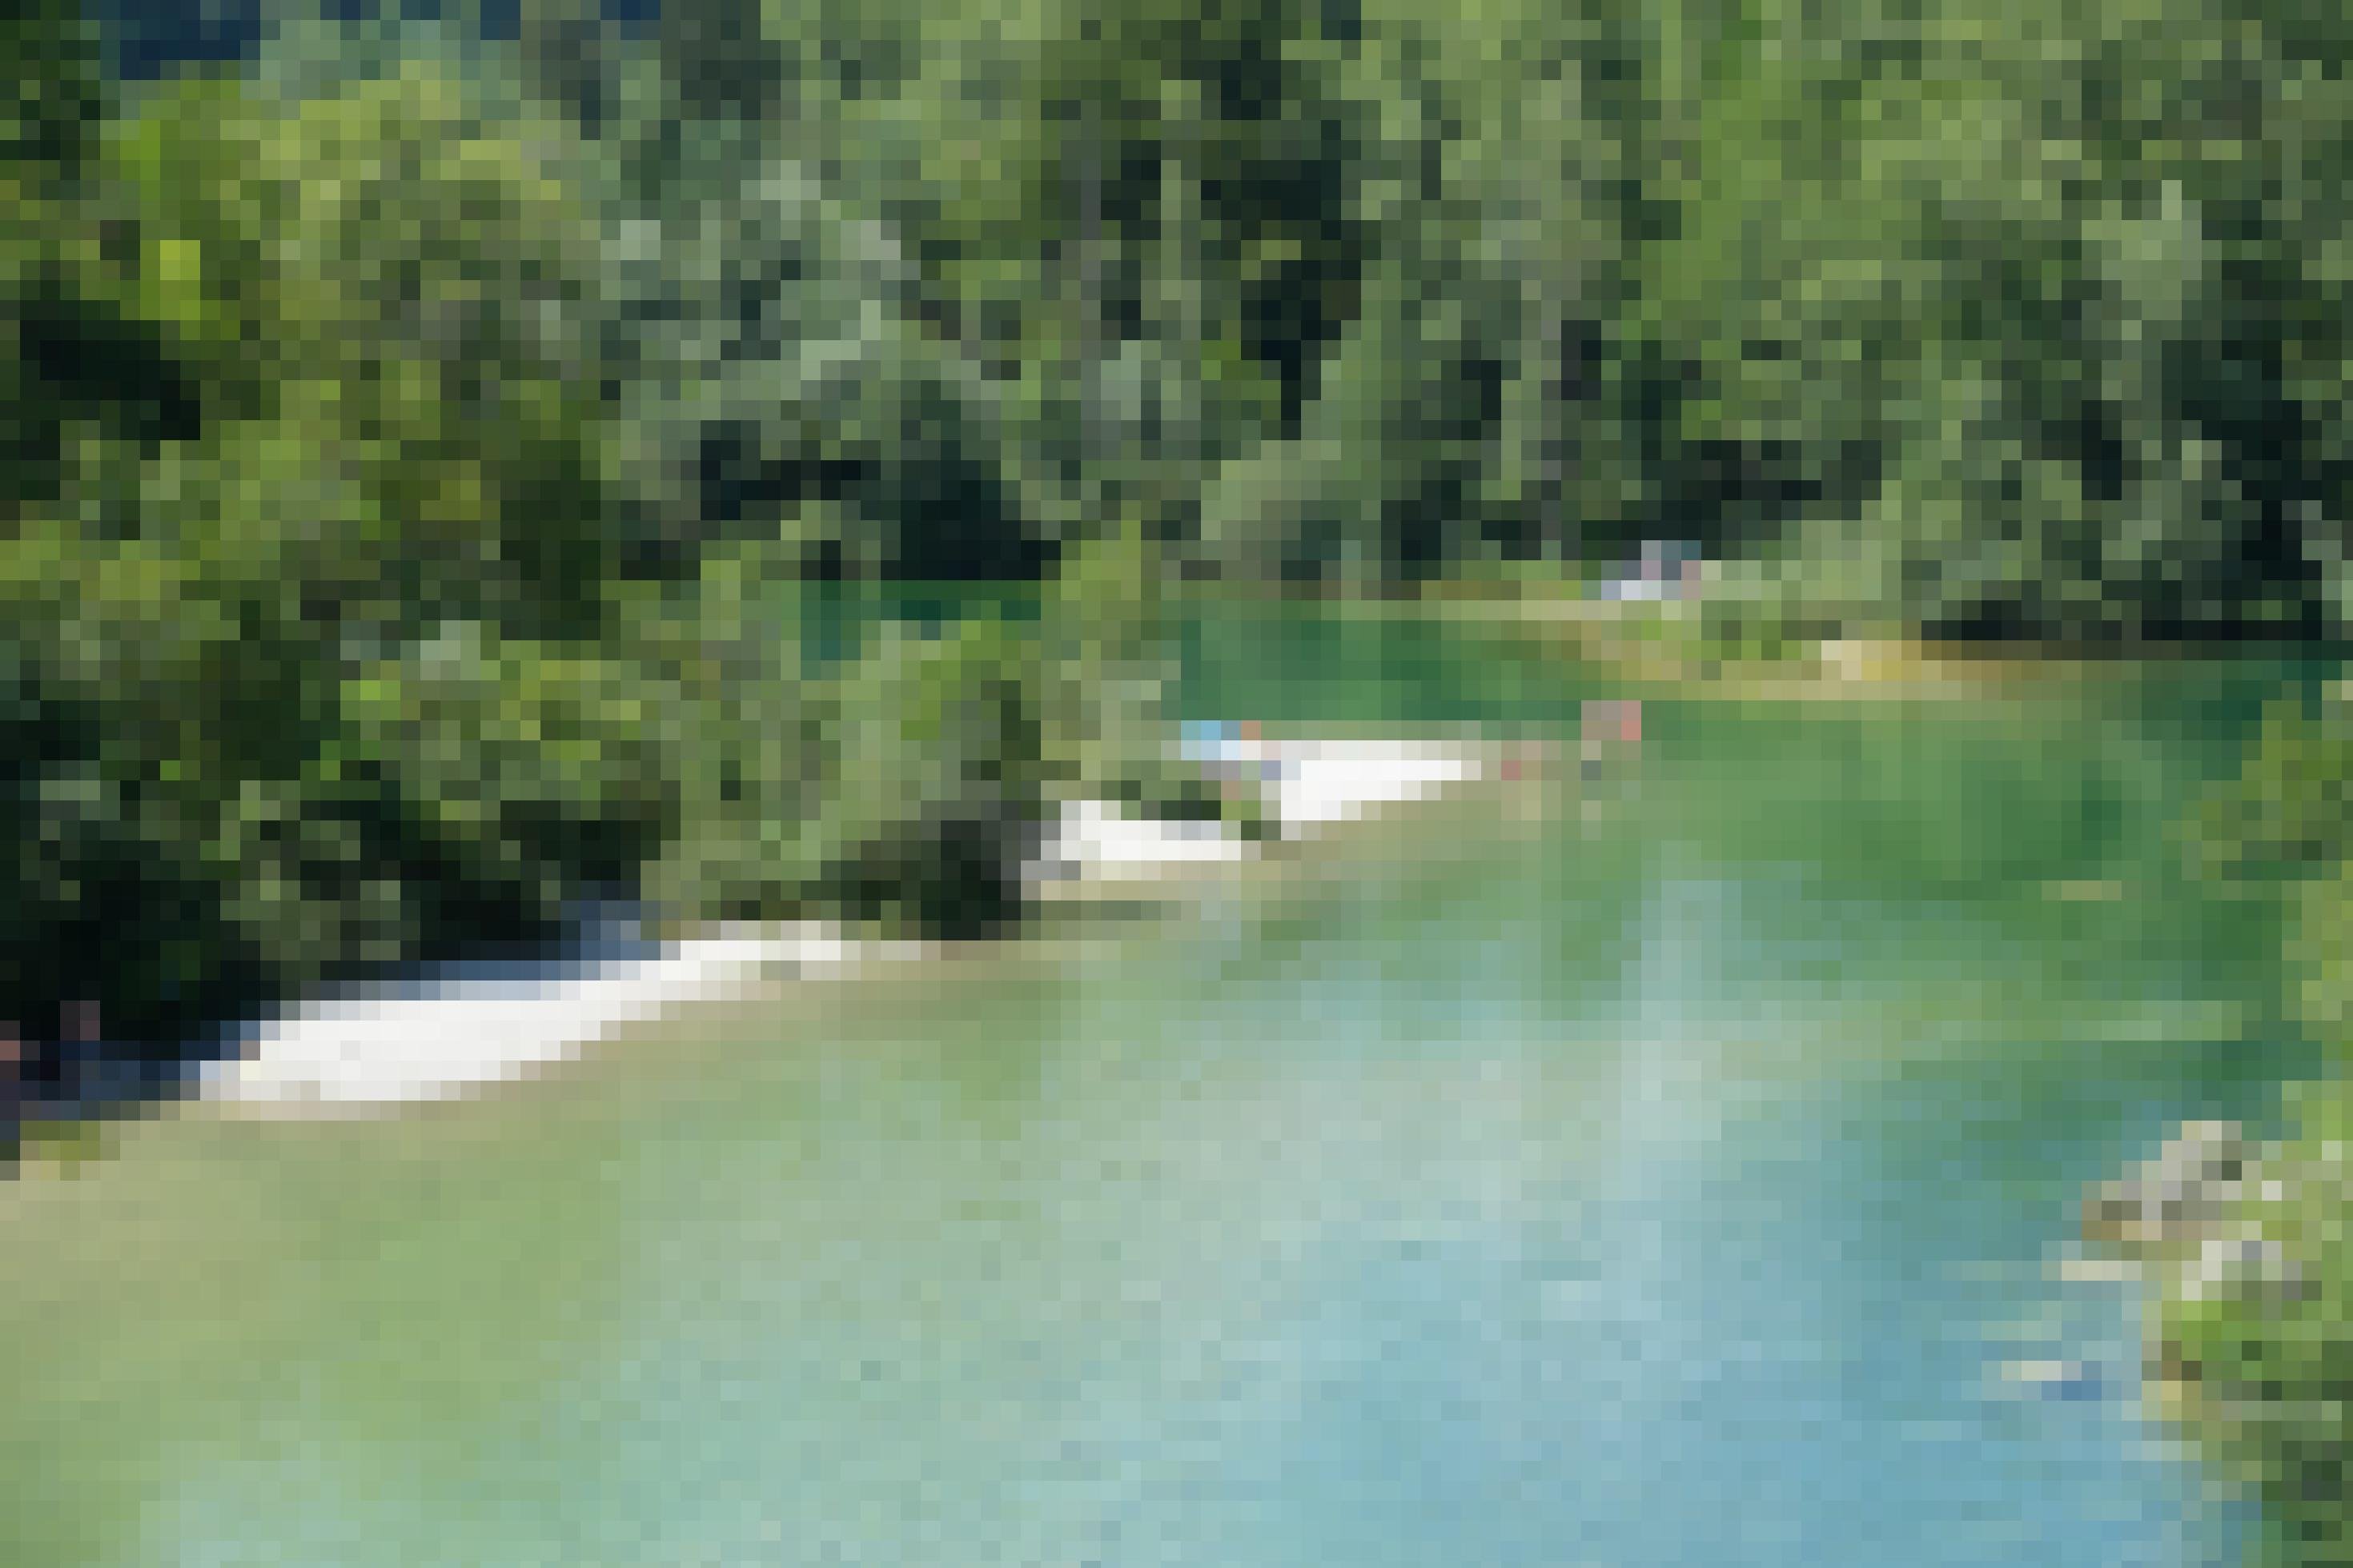 Kurve eines smaragdgrünen Flusses, rundum viel Wald, im Wasser und am Kiestrand Menschen in Badekleidung.